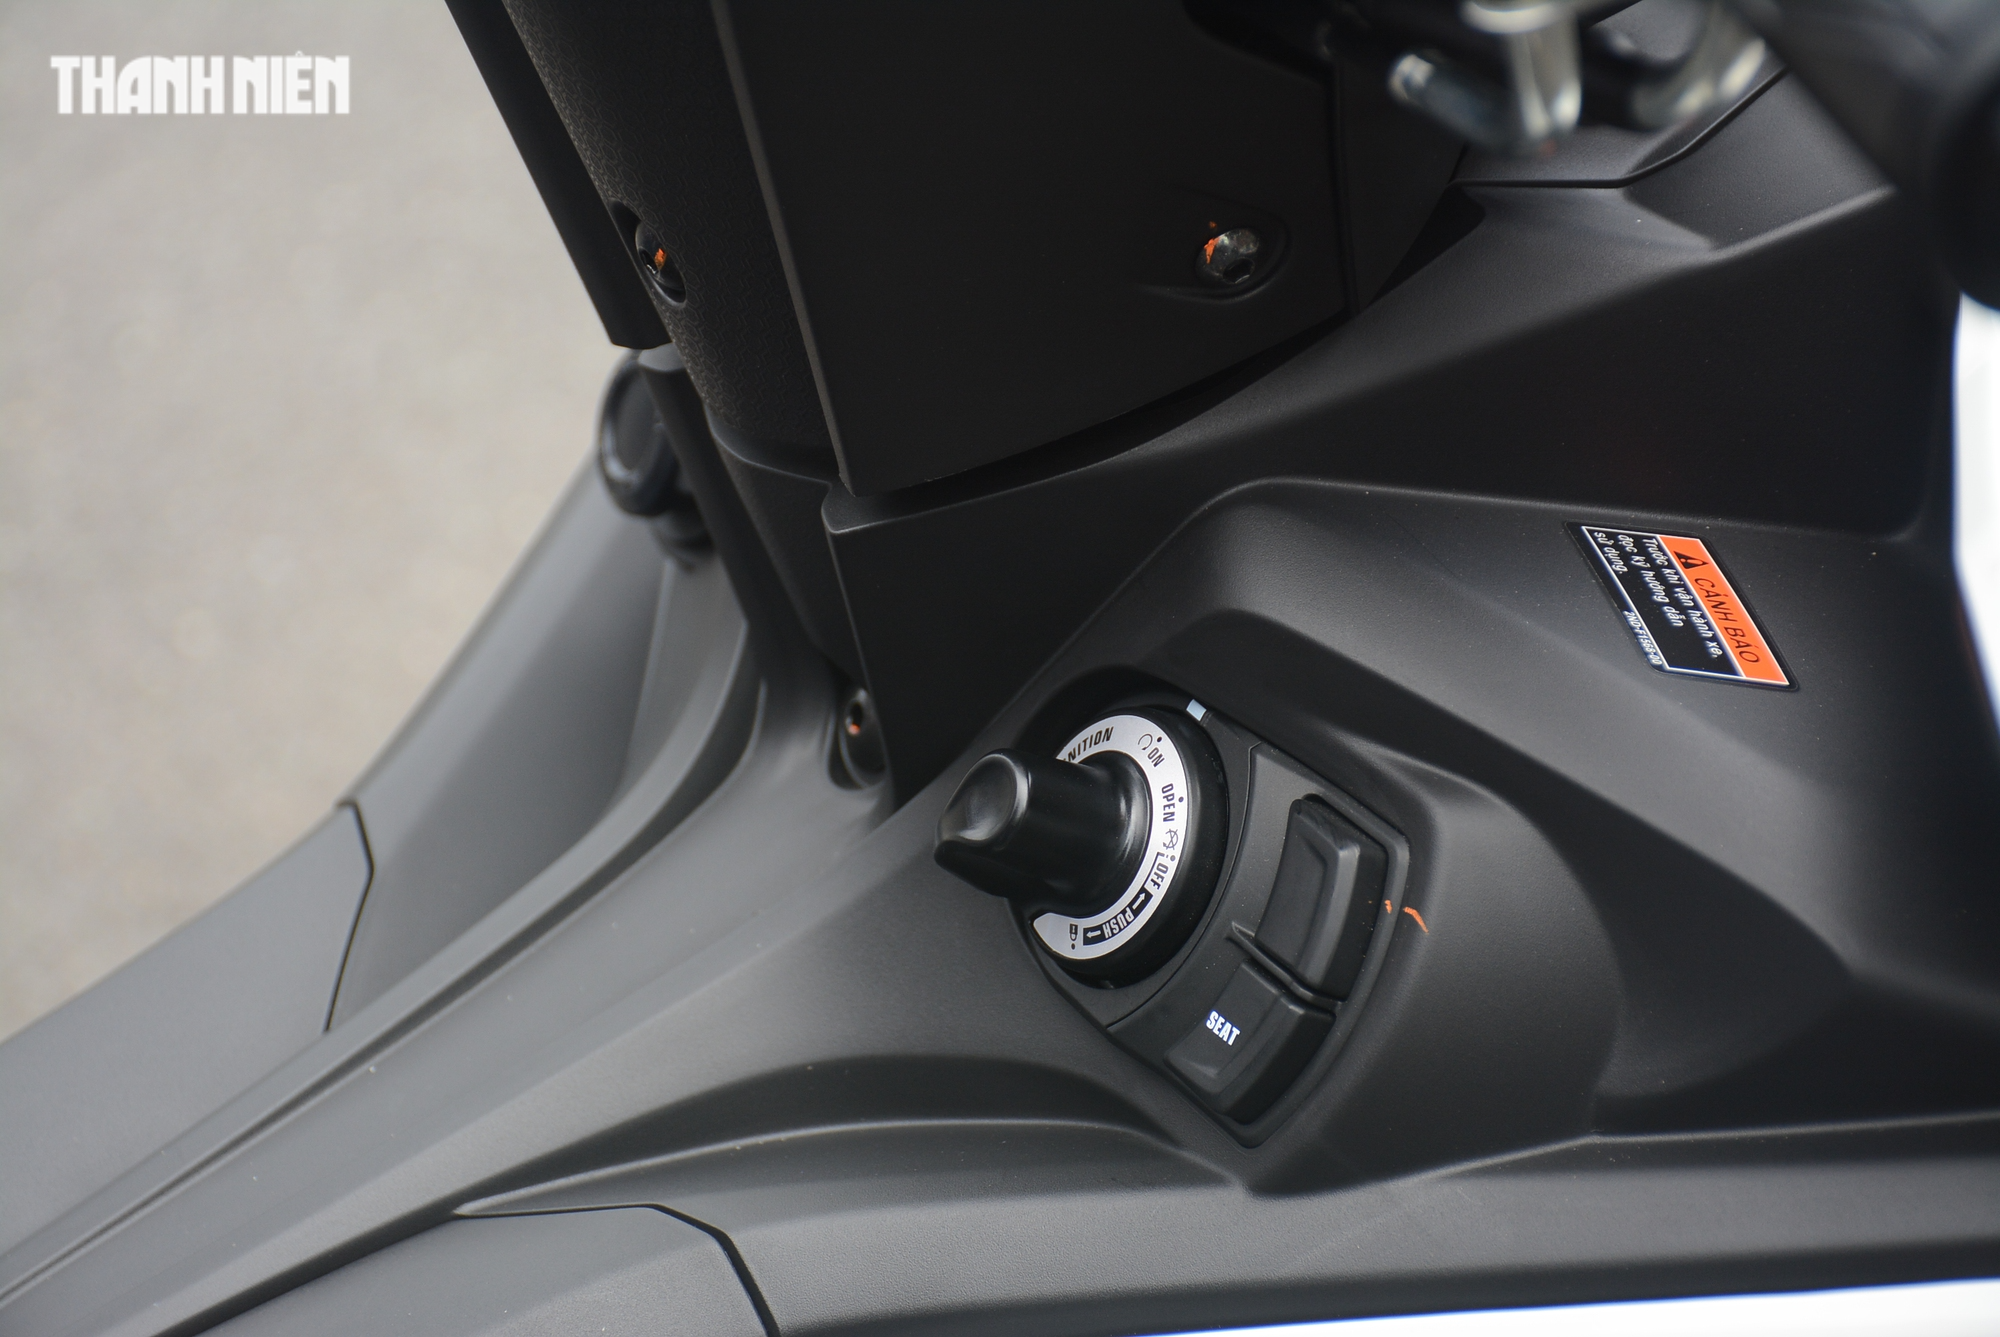 Giá bán tăng nhẹ, Yamaha Exciter 155 VVA ABS có gì mới so với mẫu cũ?